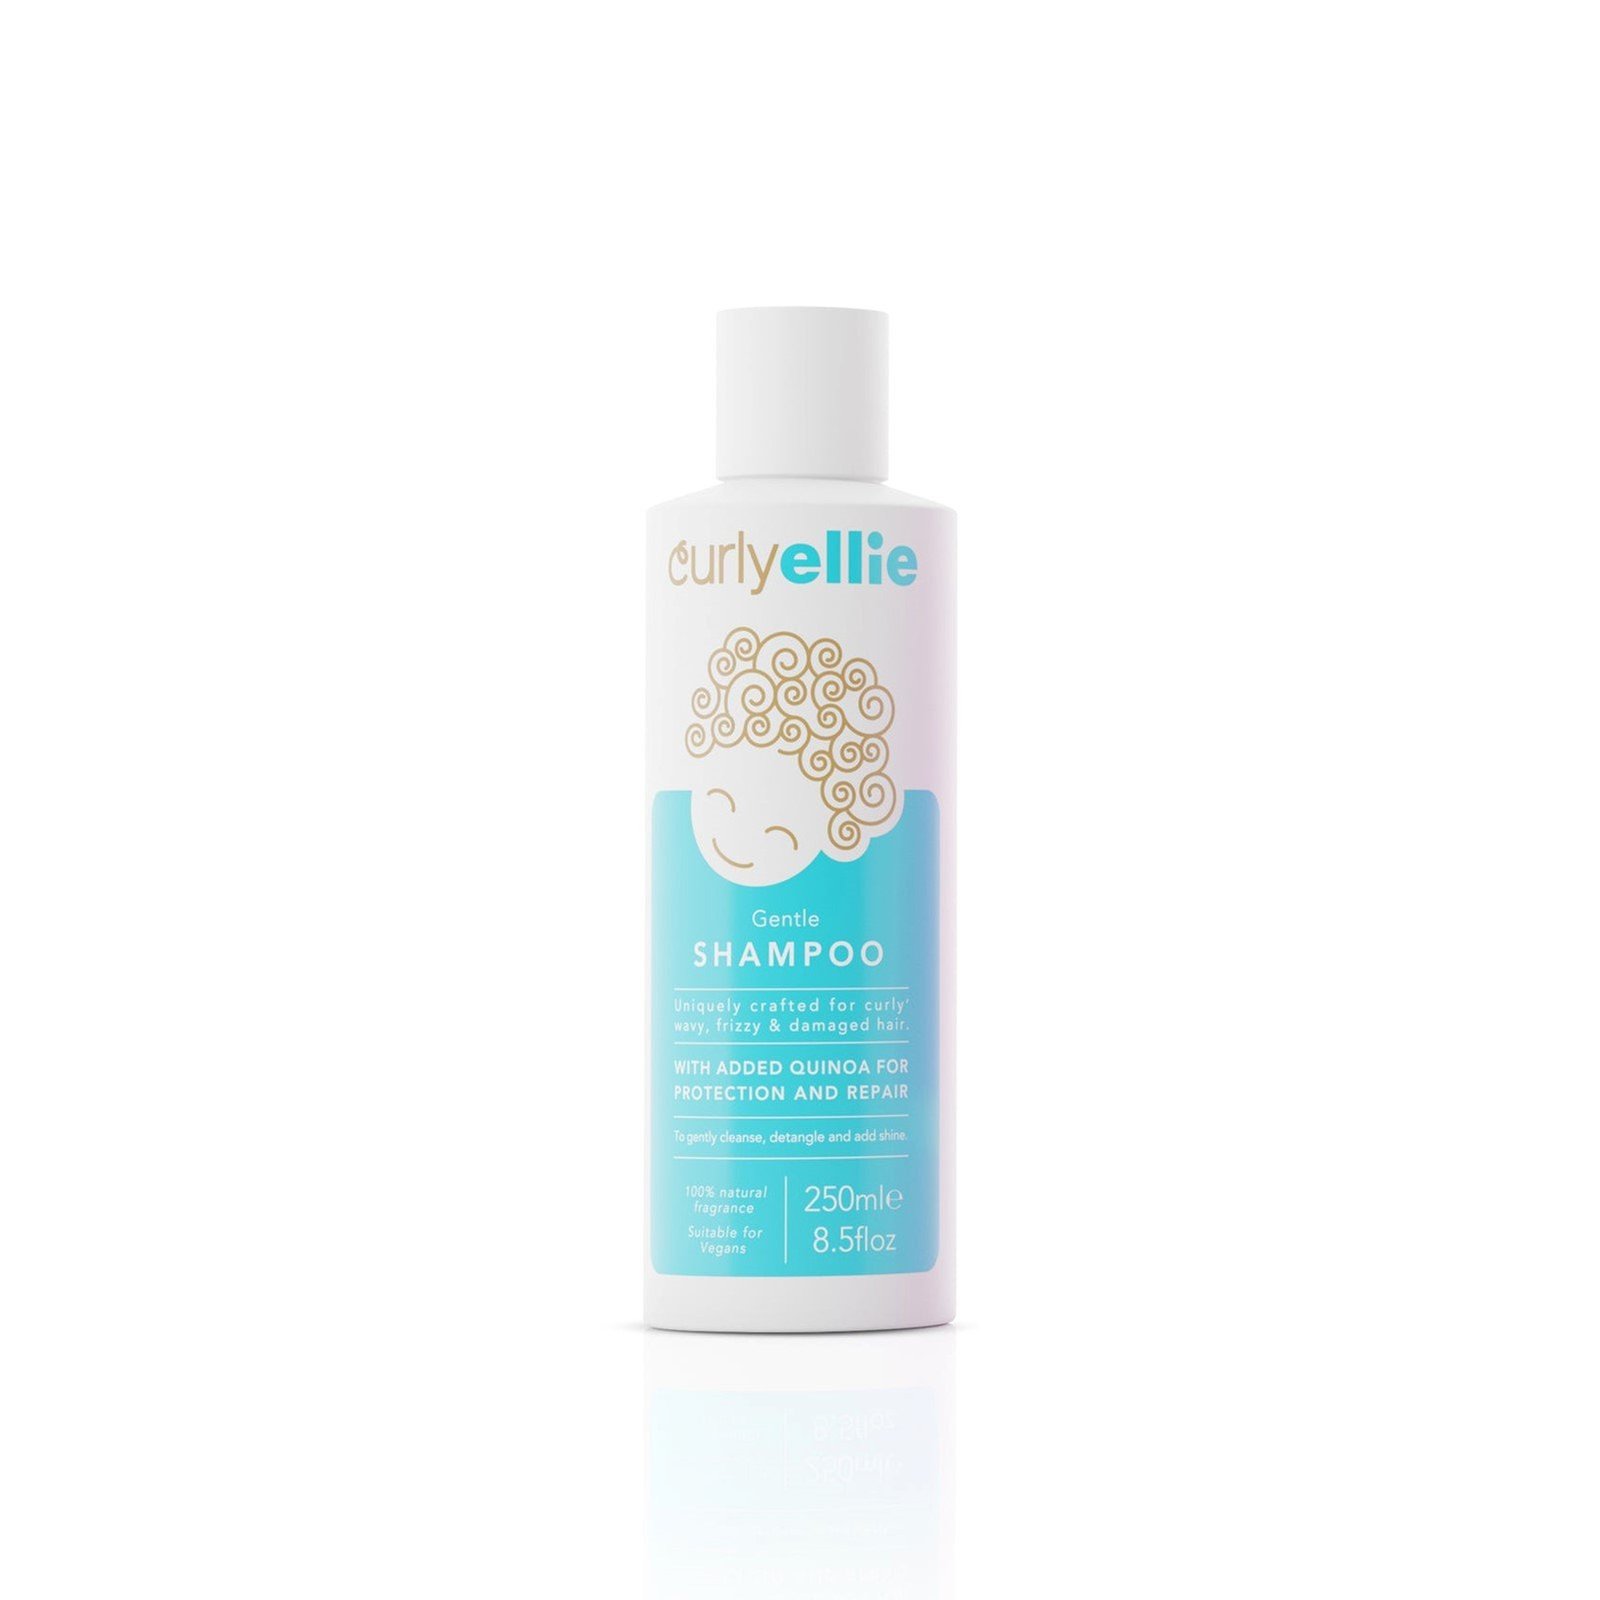 CurlyEllie Gentle Shampoo 250ml (8.5 fl oz)